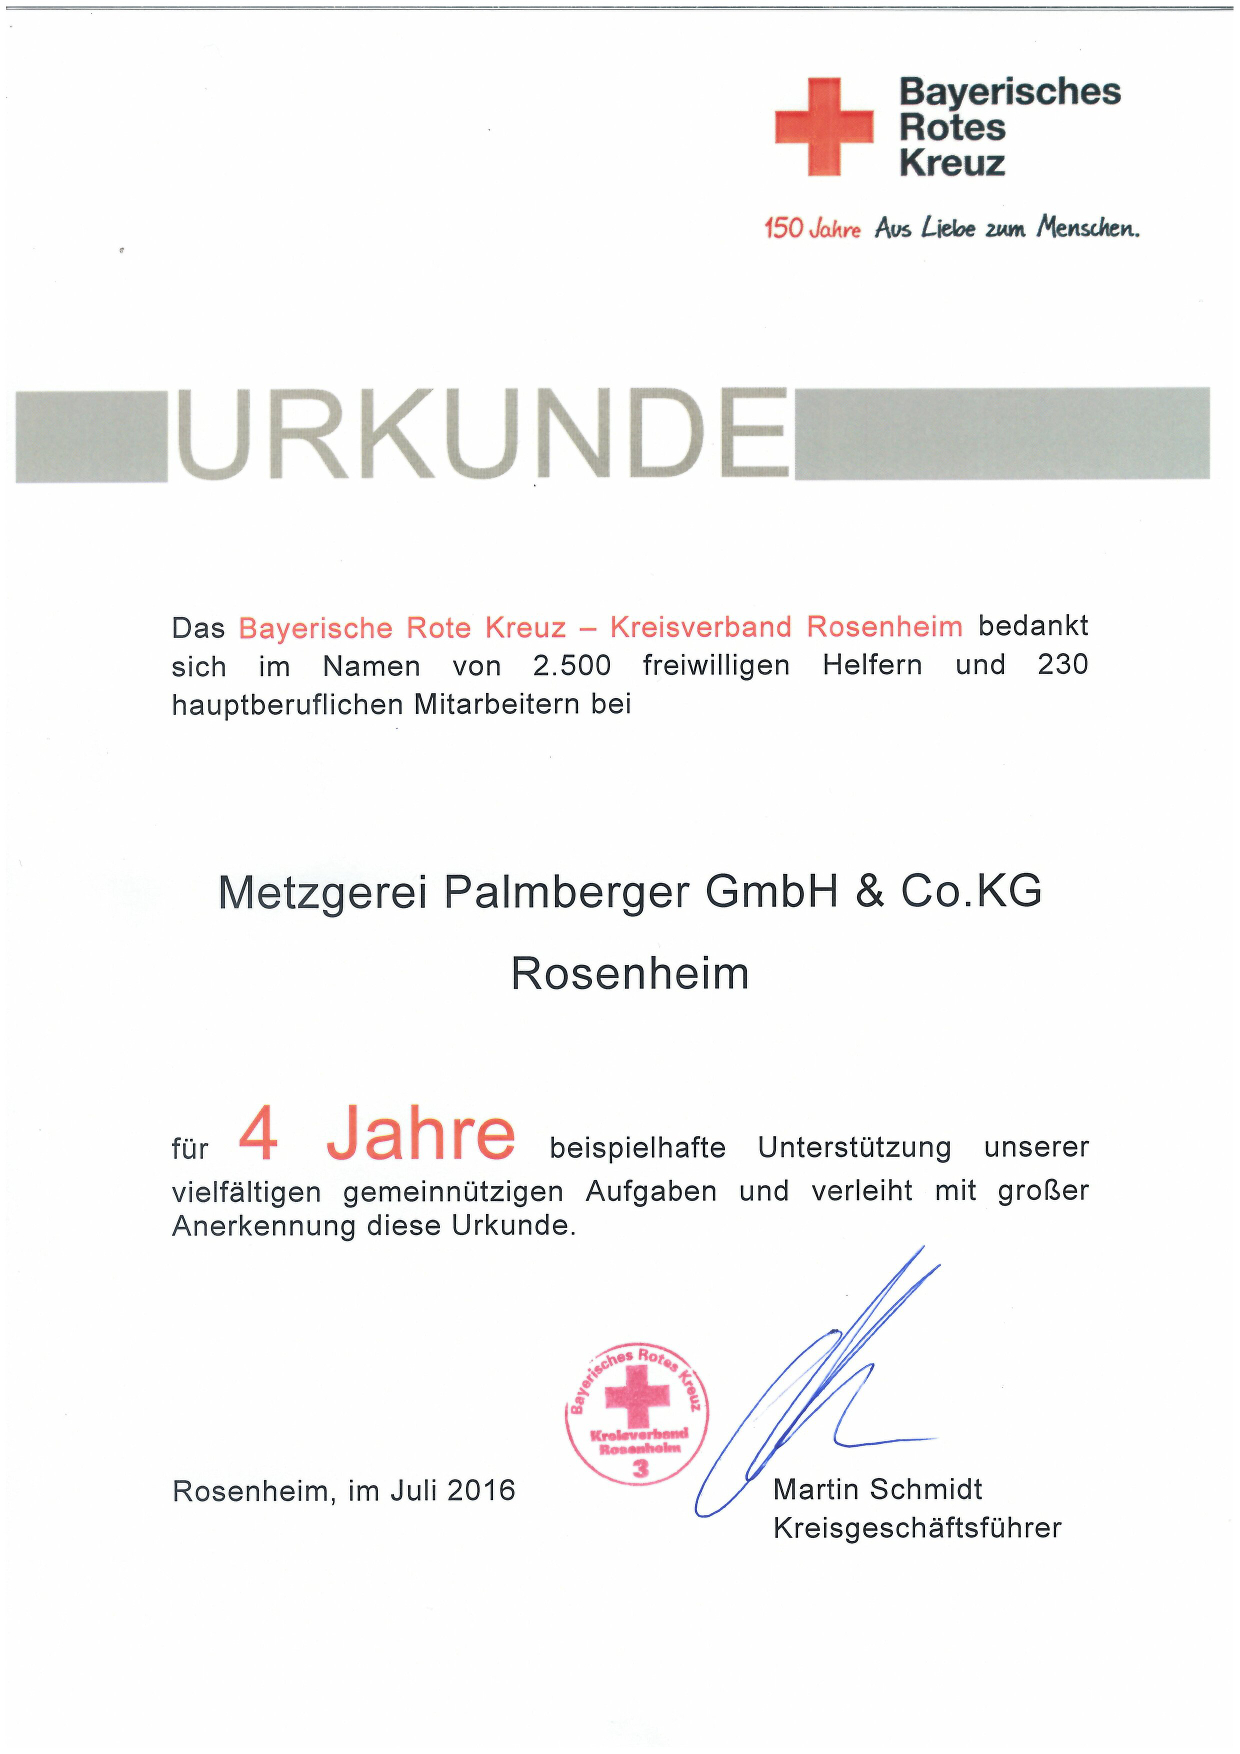 Urkunde von bayerisches rote Kreuz für ehrenamtliche Tätigkeit von Metzgerei Palmberger